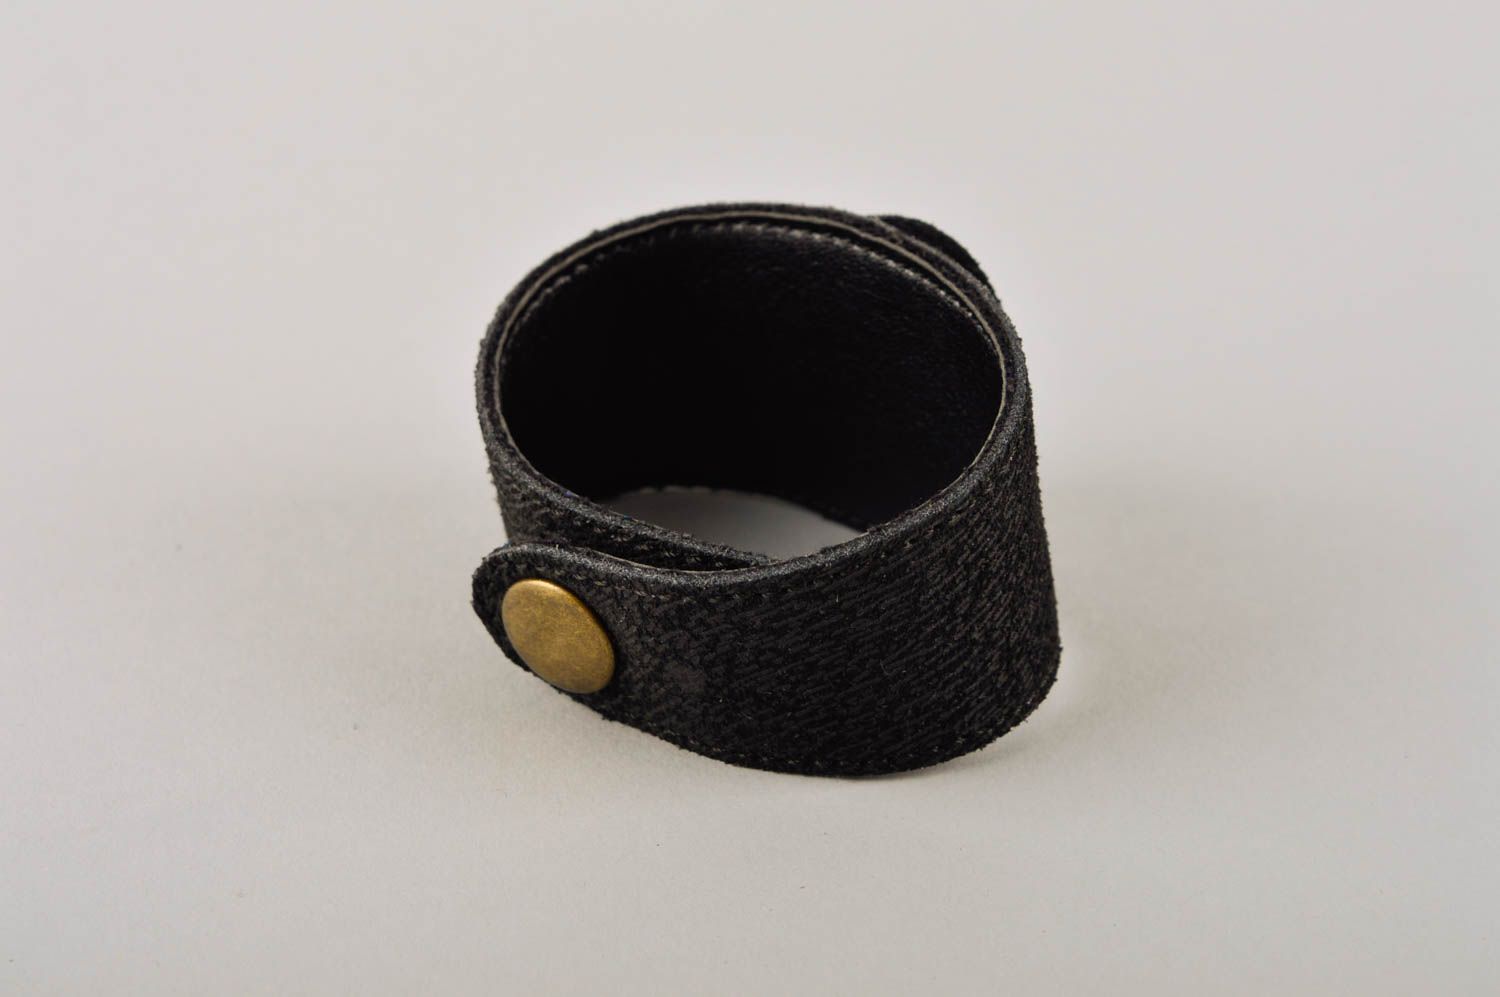 Stylish handmade leather bracelet wrist bracelet designs fashion tips gift ideas photo 4